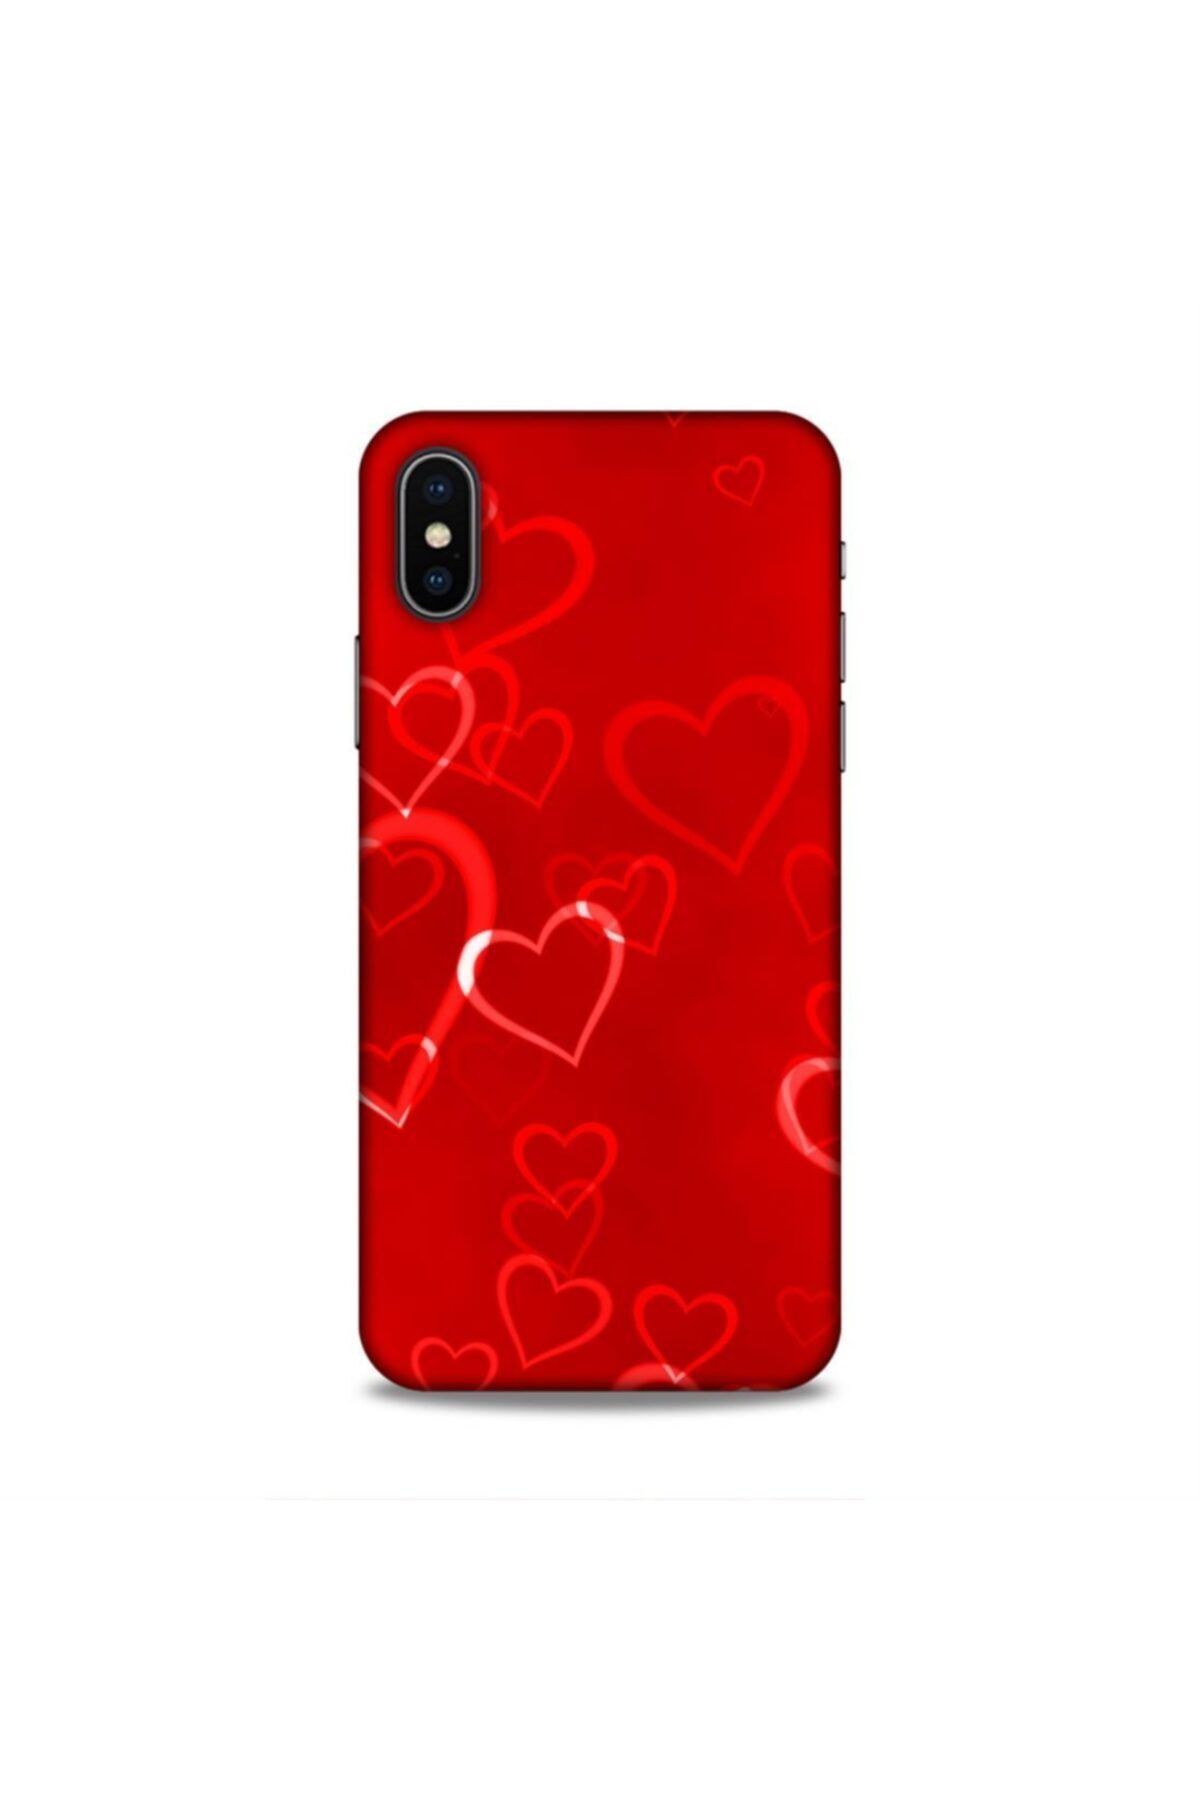 Pickcase Apple Iphone X Kılıf Desenli Arka Kapak Kırmızı Kalpler